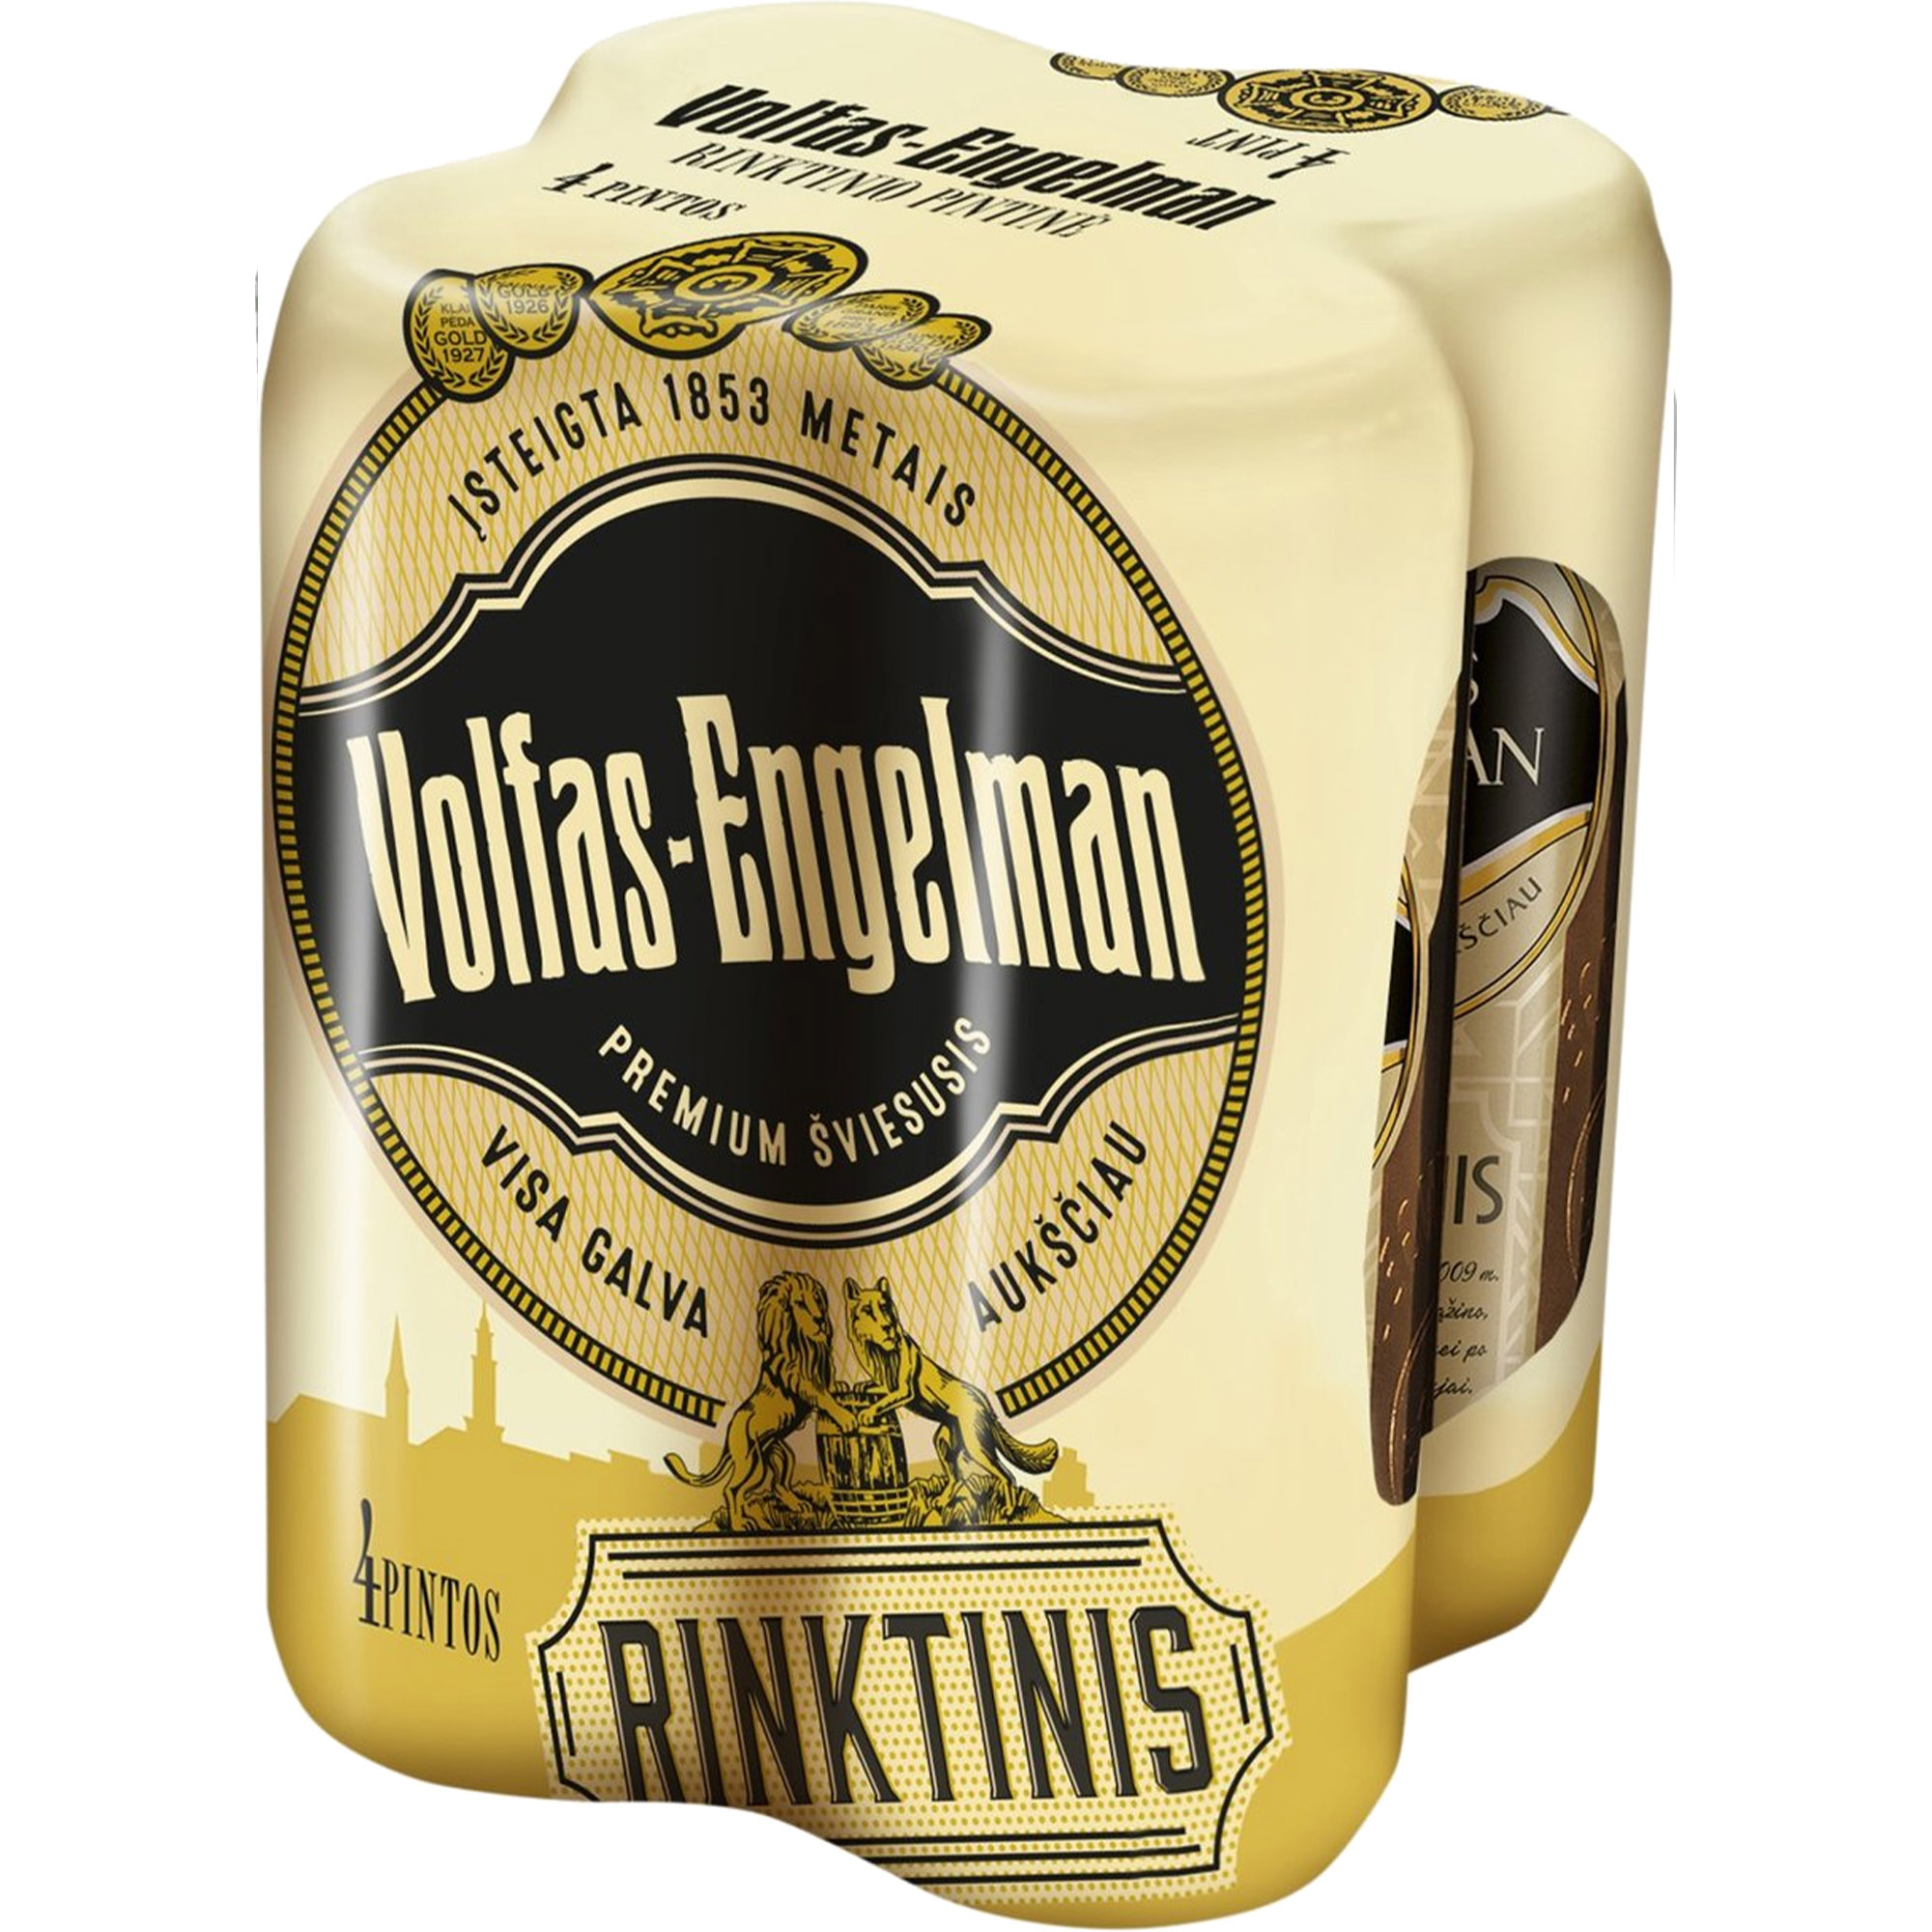 Пиво Volfas Engelman Rinktinis светлое 5.2% 4 шт. х 0.568 л ж/б - фото 1